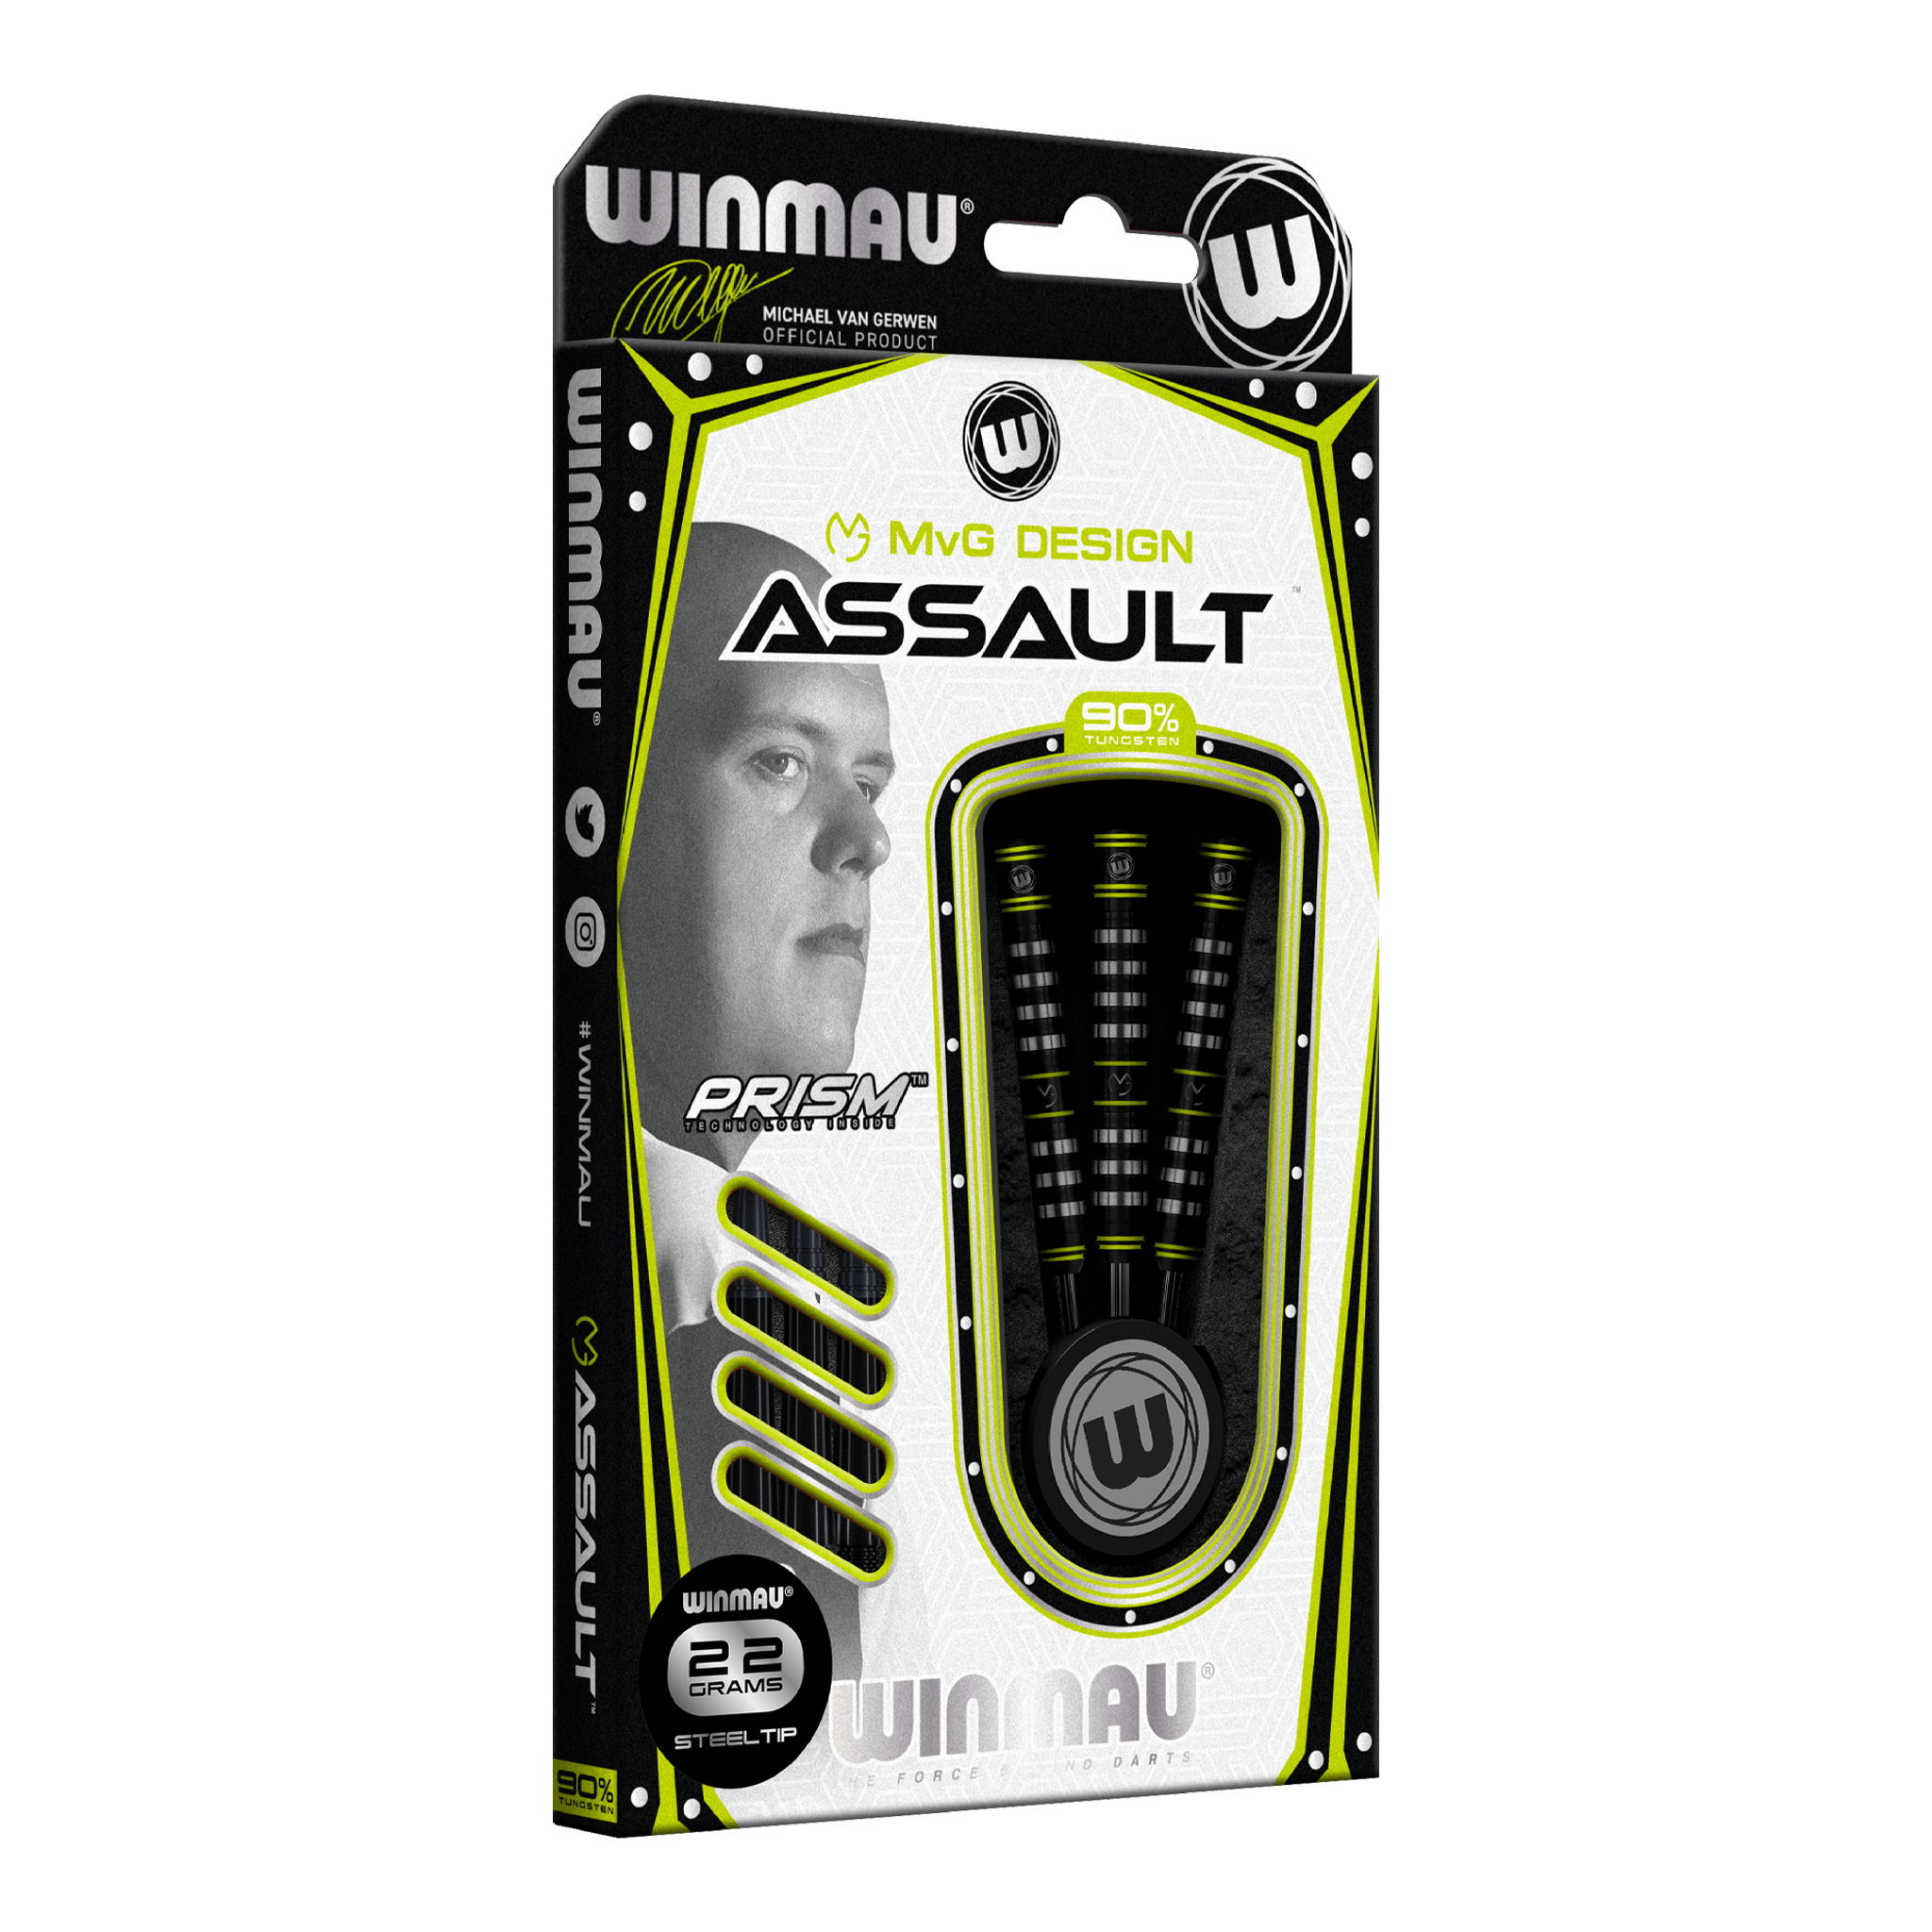 Winmau MVG Assault Steel Tip Darts - 90% Tungsten - 22 Grams Darts